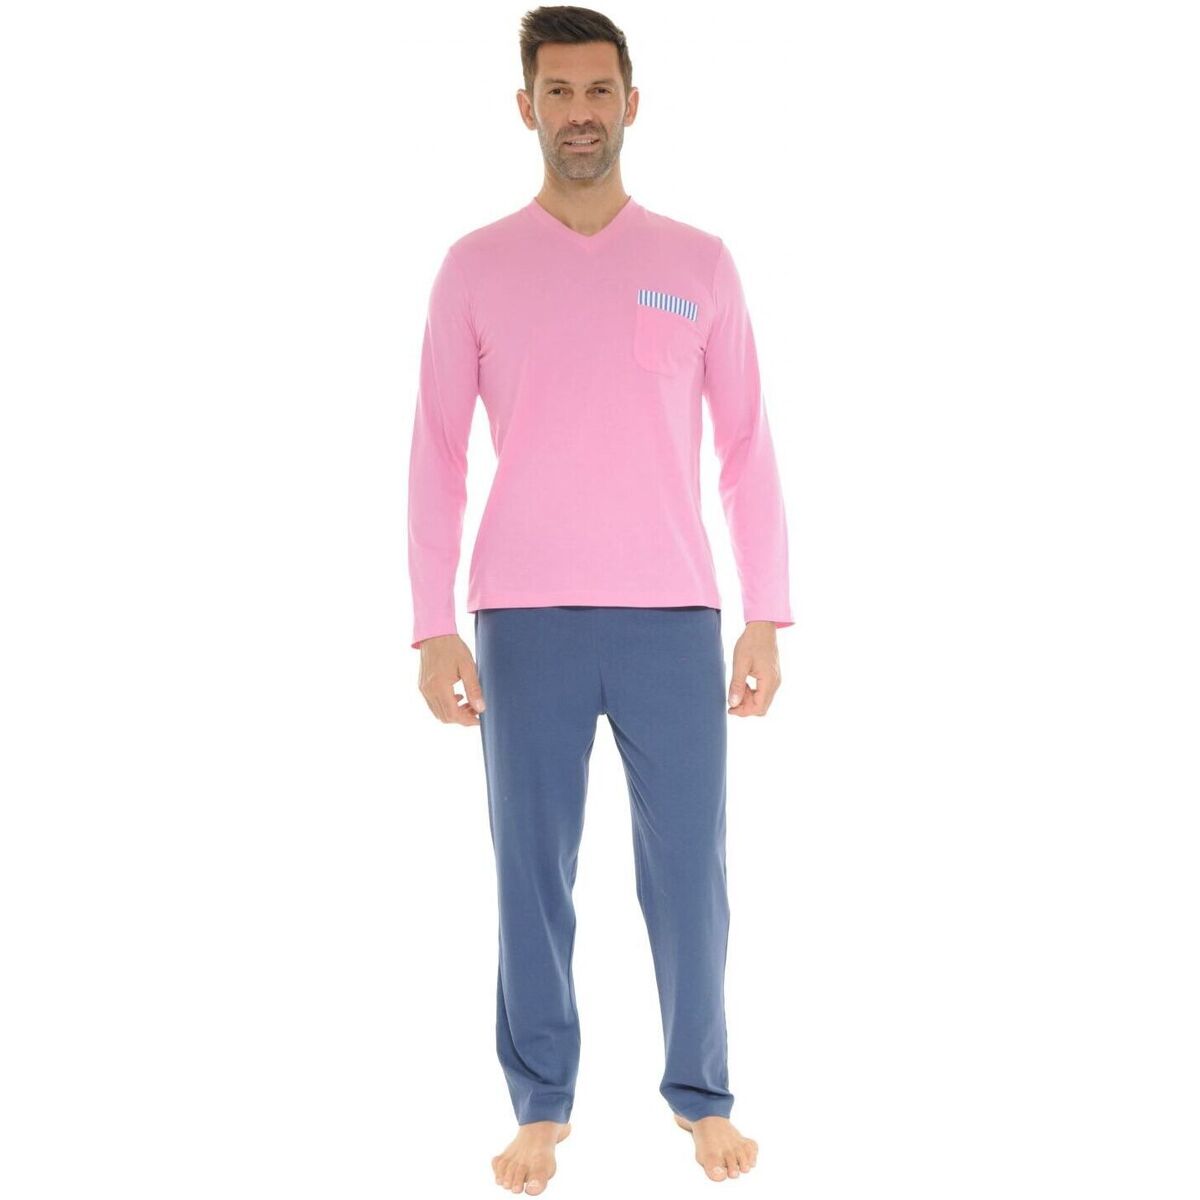 Îmbracaminte Bărbați Pijamale și Cămăsi de noapte Christian Cane WAYNE roz